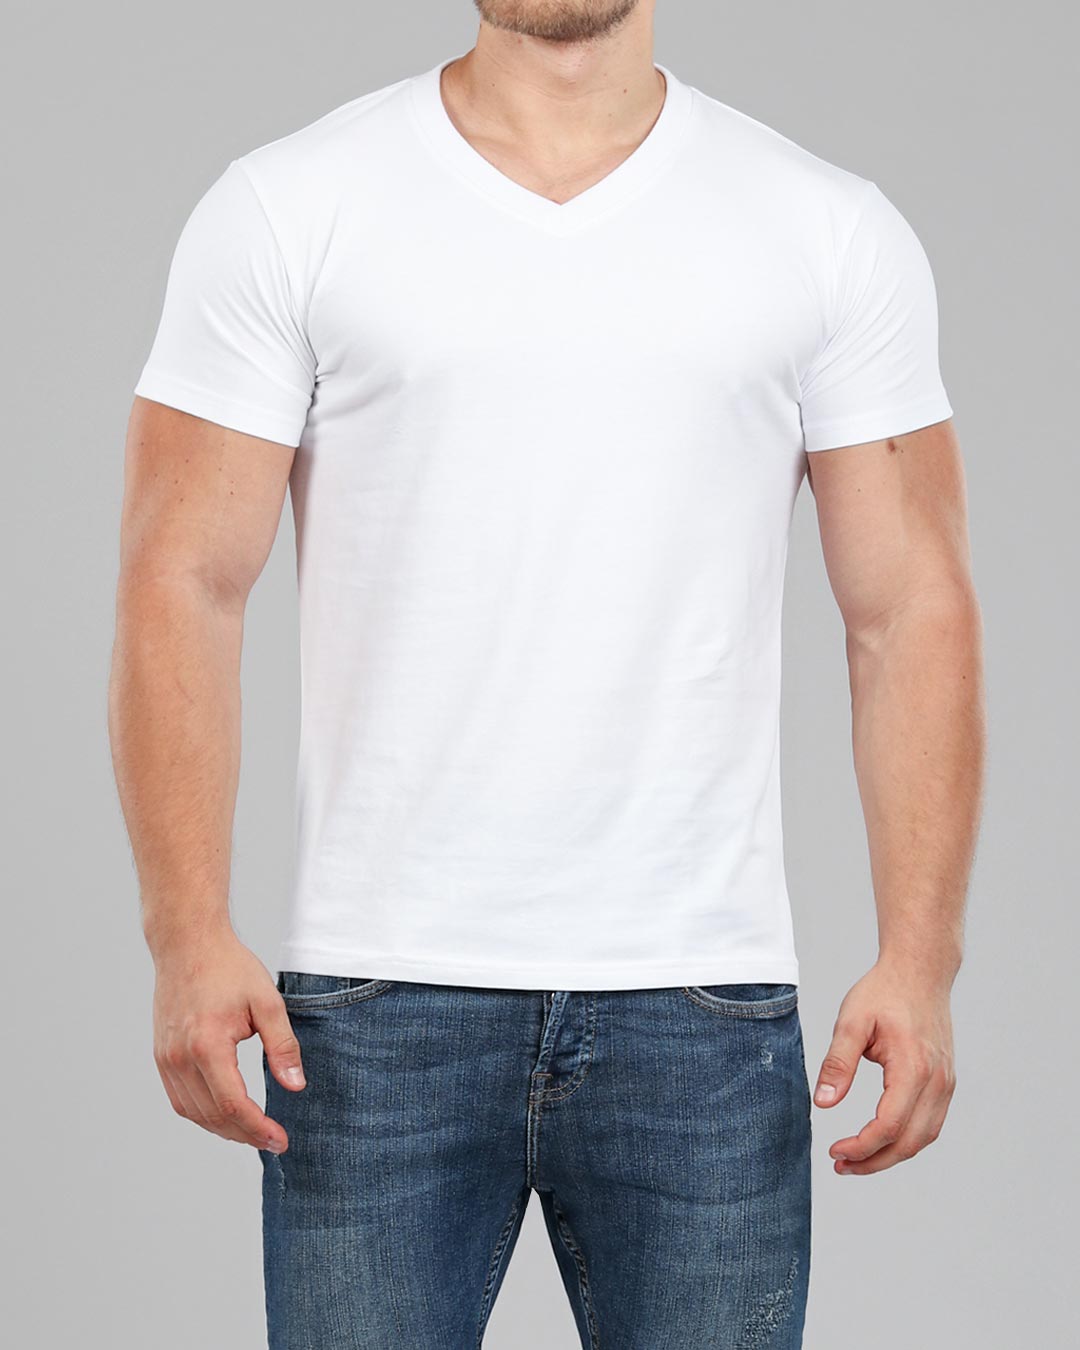 besejret Tolk rotation Men's White V-Neck Fitted Plain T-Shirt | Muscle Fit Basics